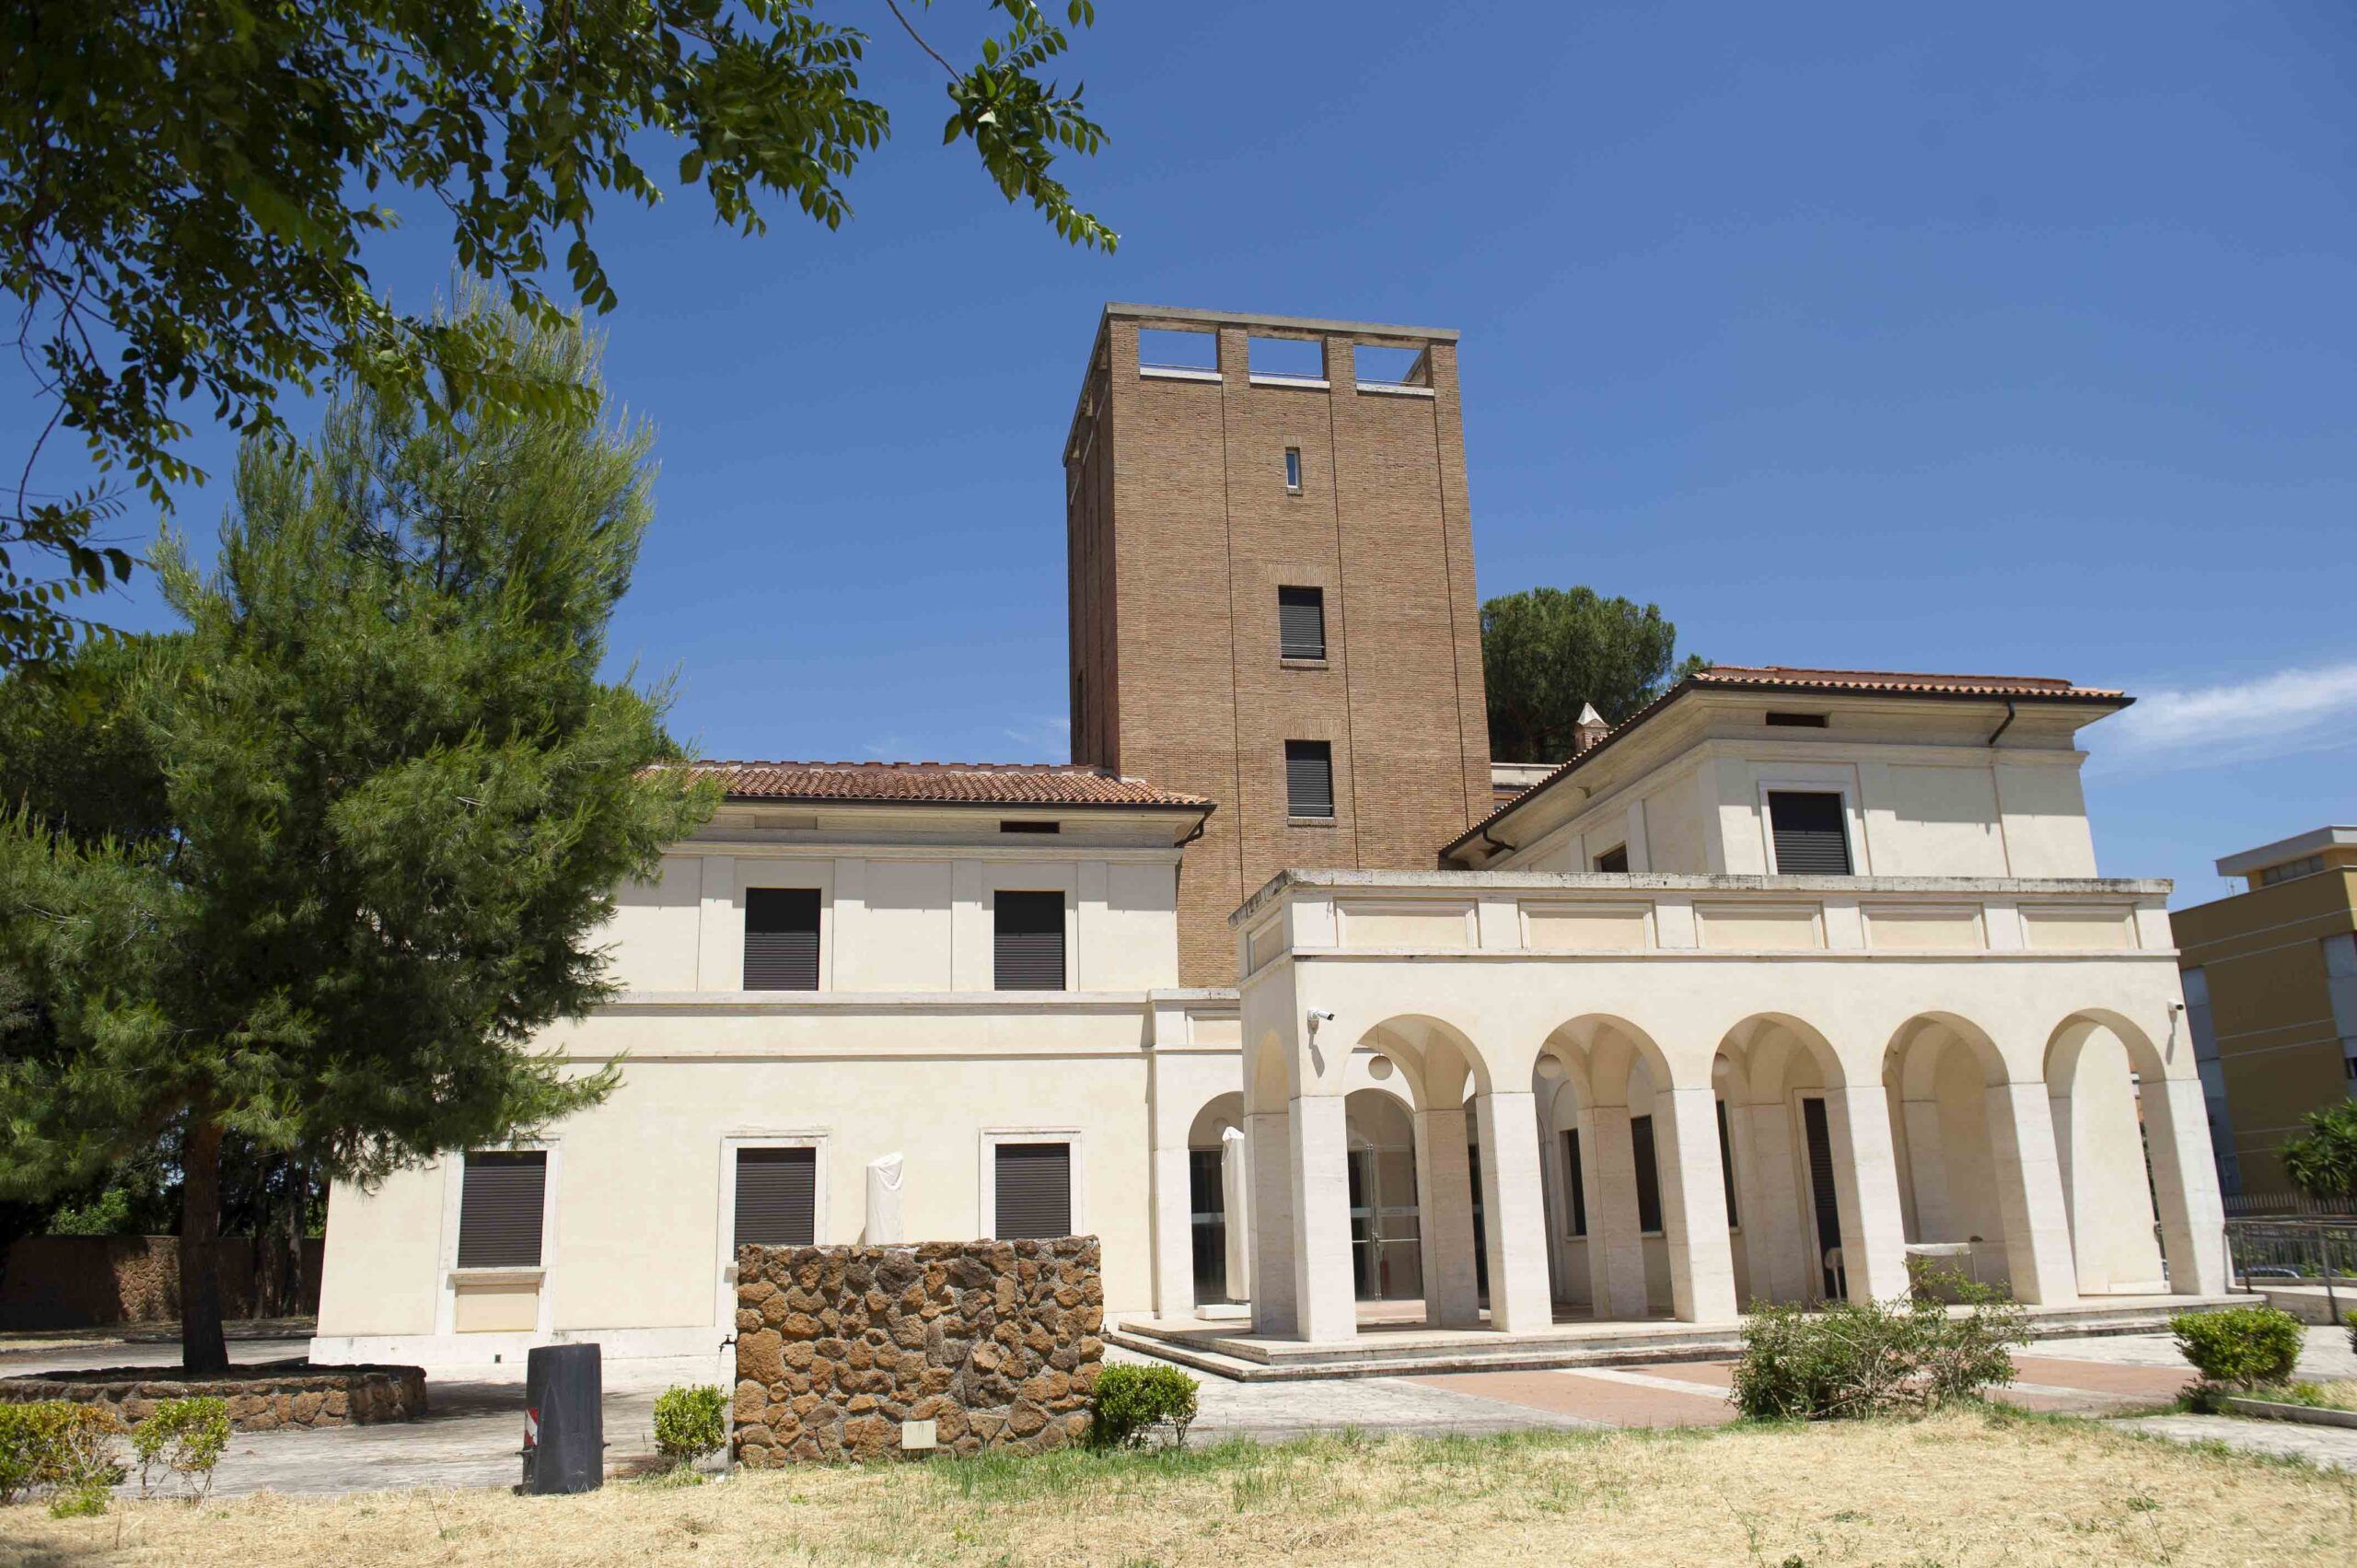 Montesacro - Villa Farinacci